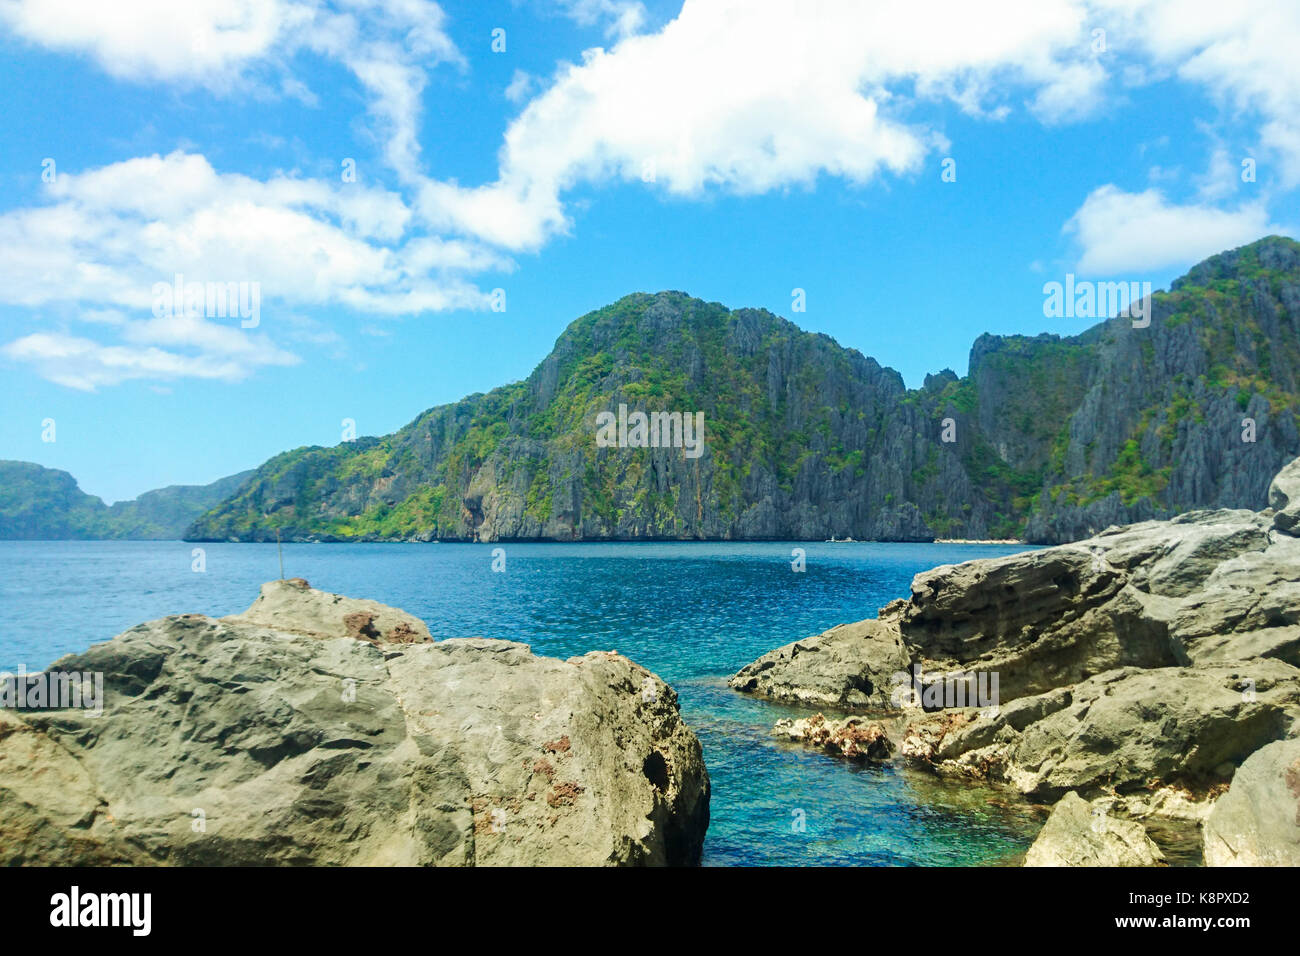 Bella vista sulla dall'isola di Shimizu, el nido, palawan (l'ultima frontiera), mimaropa, Filippine, Sud-est asiatico Foto Stock